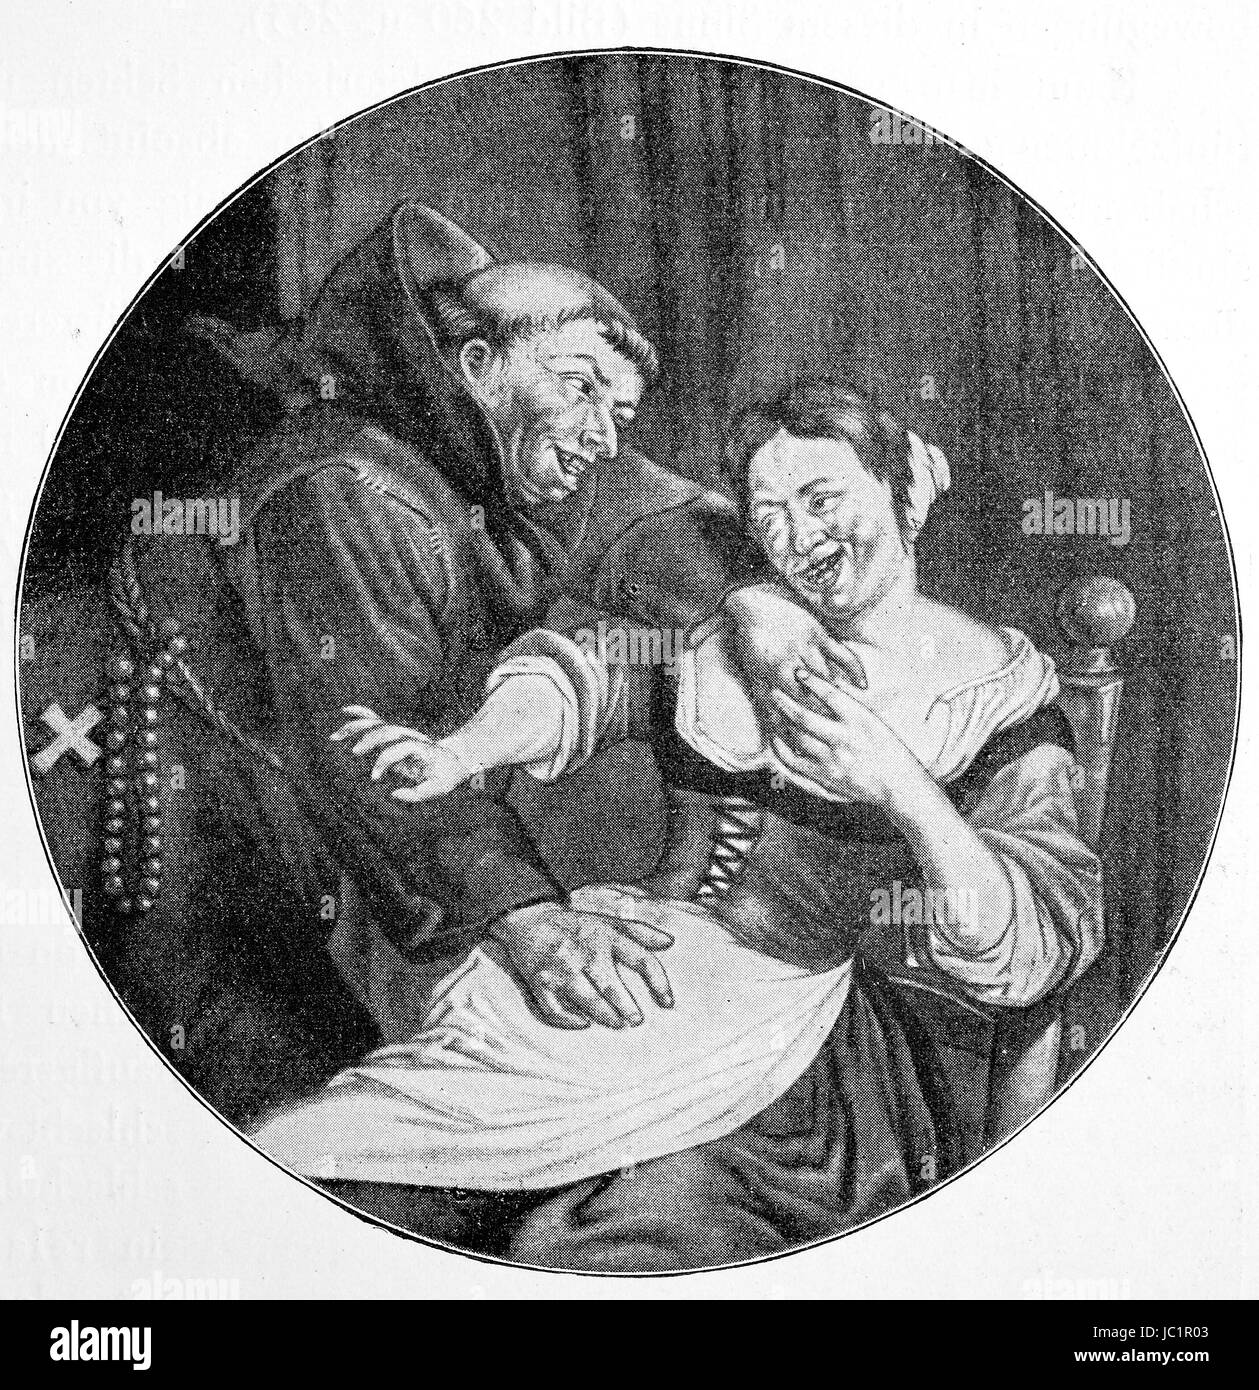 Quand le forgeron travaille, le moine flirte avec sa femme, 17e siècle, l'amélioration de la reproduction numérique d'une publication de l'année 1880 Banque D'Images